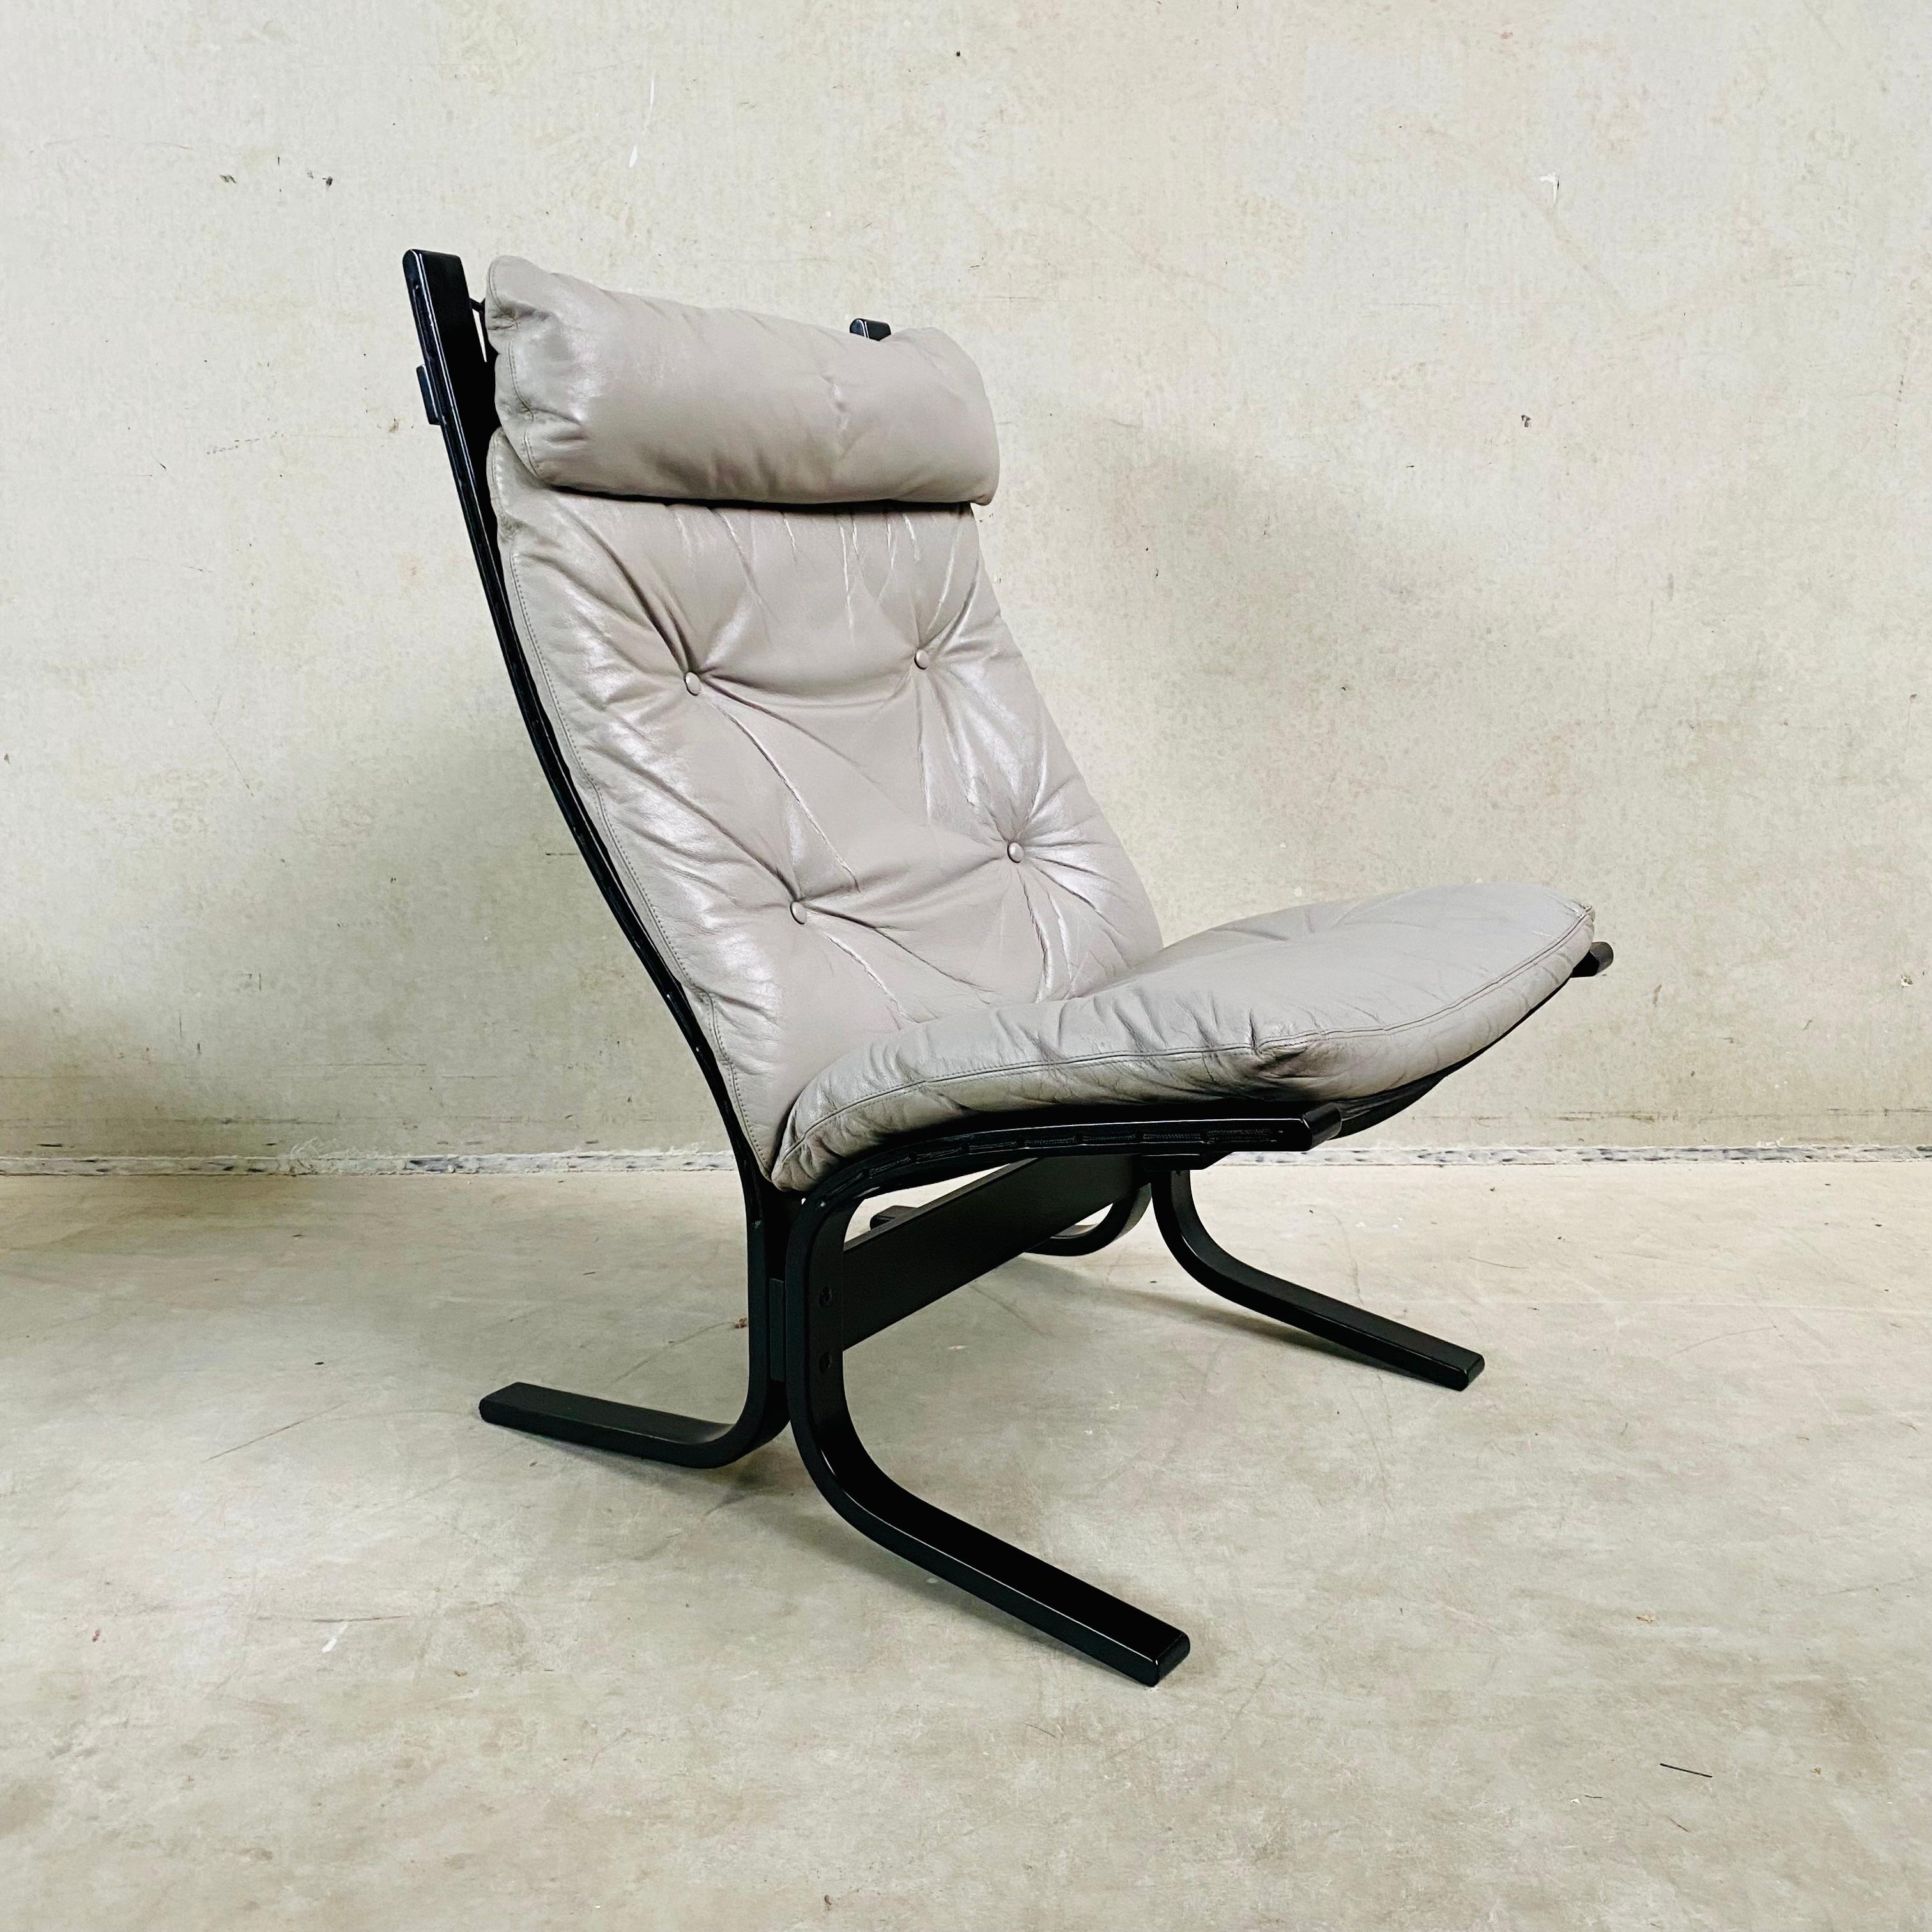 Sehr seltener Sessel aus grauem Leder mit schwarz lackiertem Sperrholz und Leinwand von Ingmar Relling für Westnova, Norwegen 1960er Jahre

Wenn Sie auf der Suche nach einem stilvollen und bequemen Loungesessel sind, der modernes Design mit